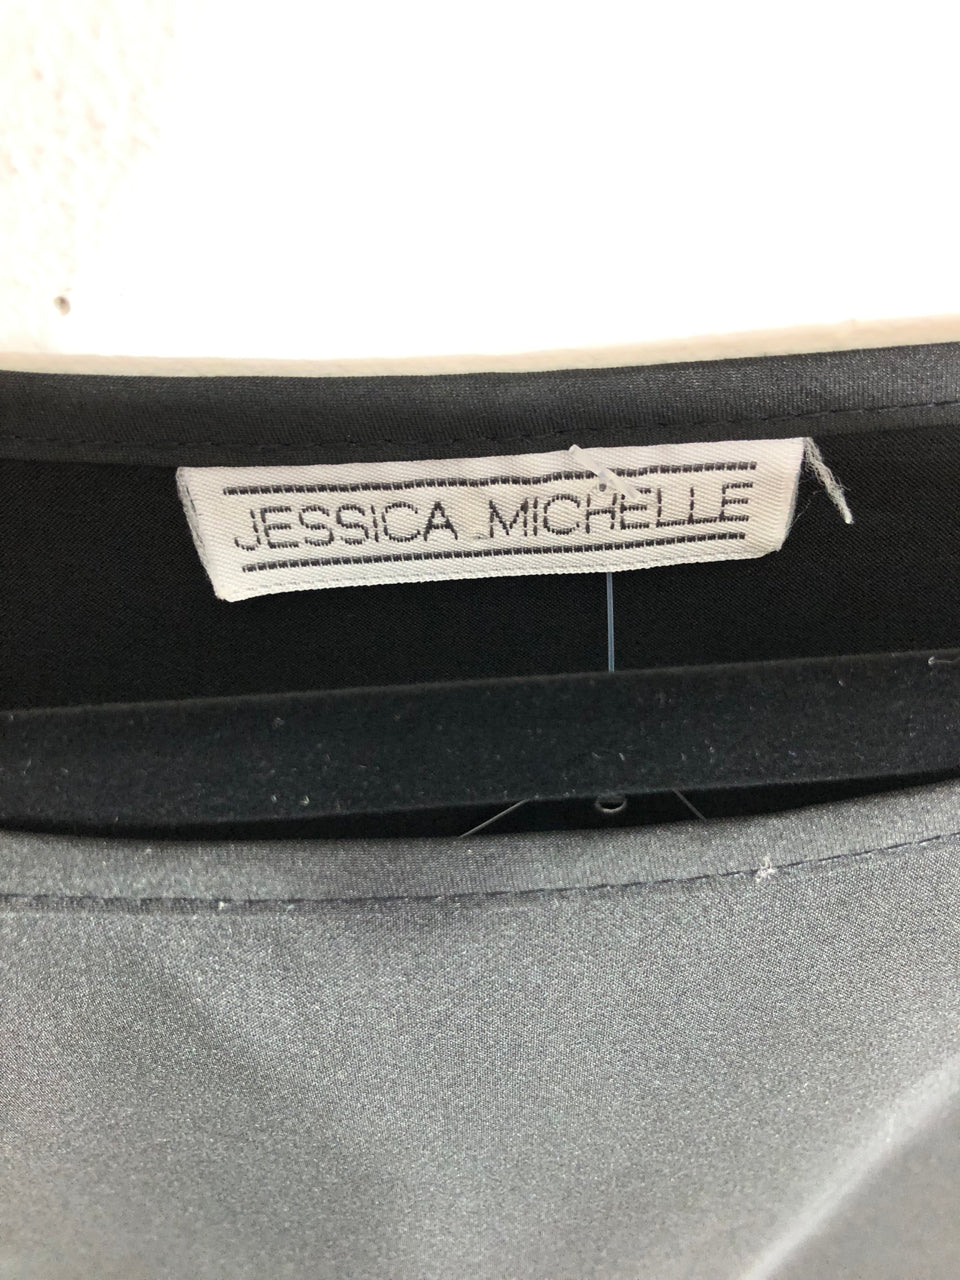 Jessica Michelle Top